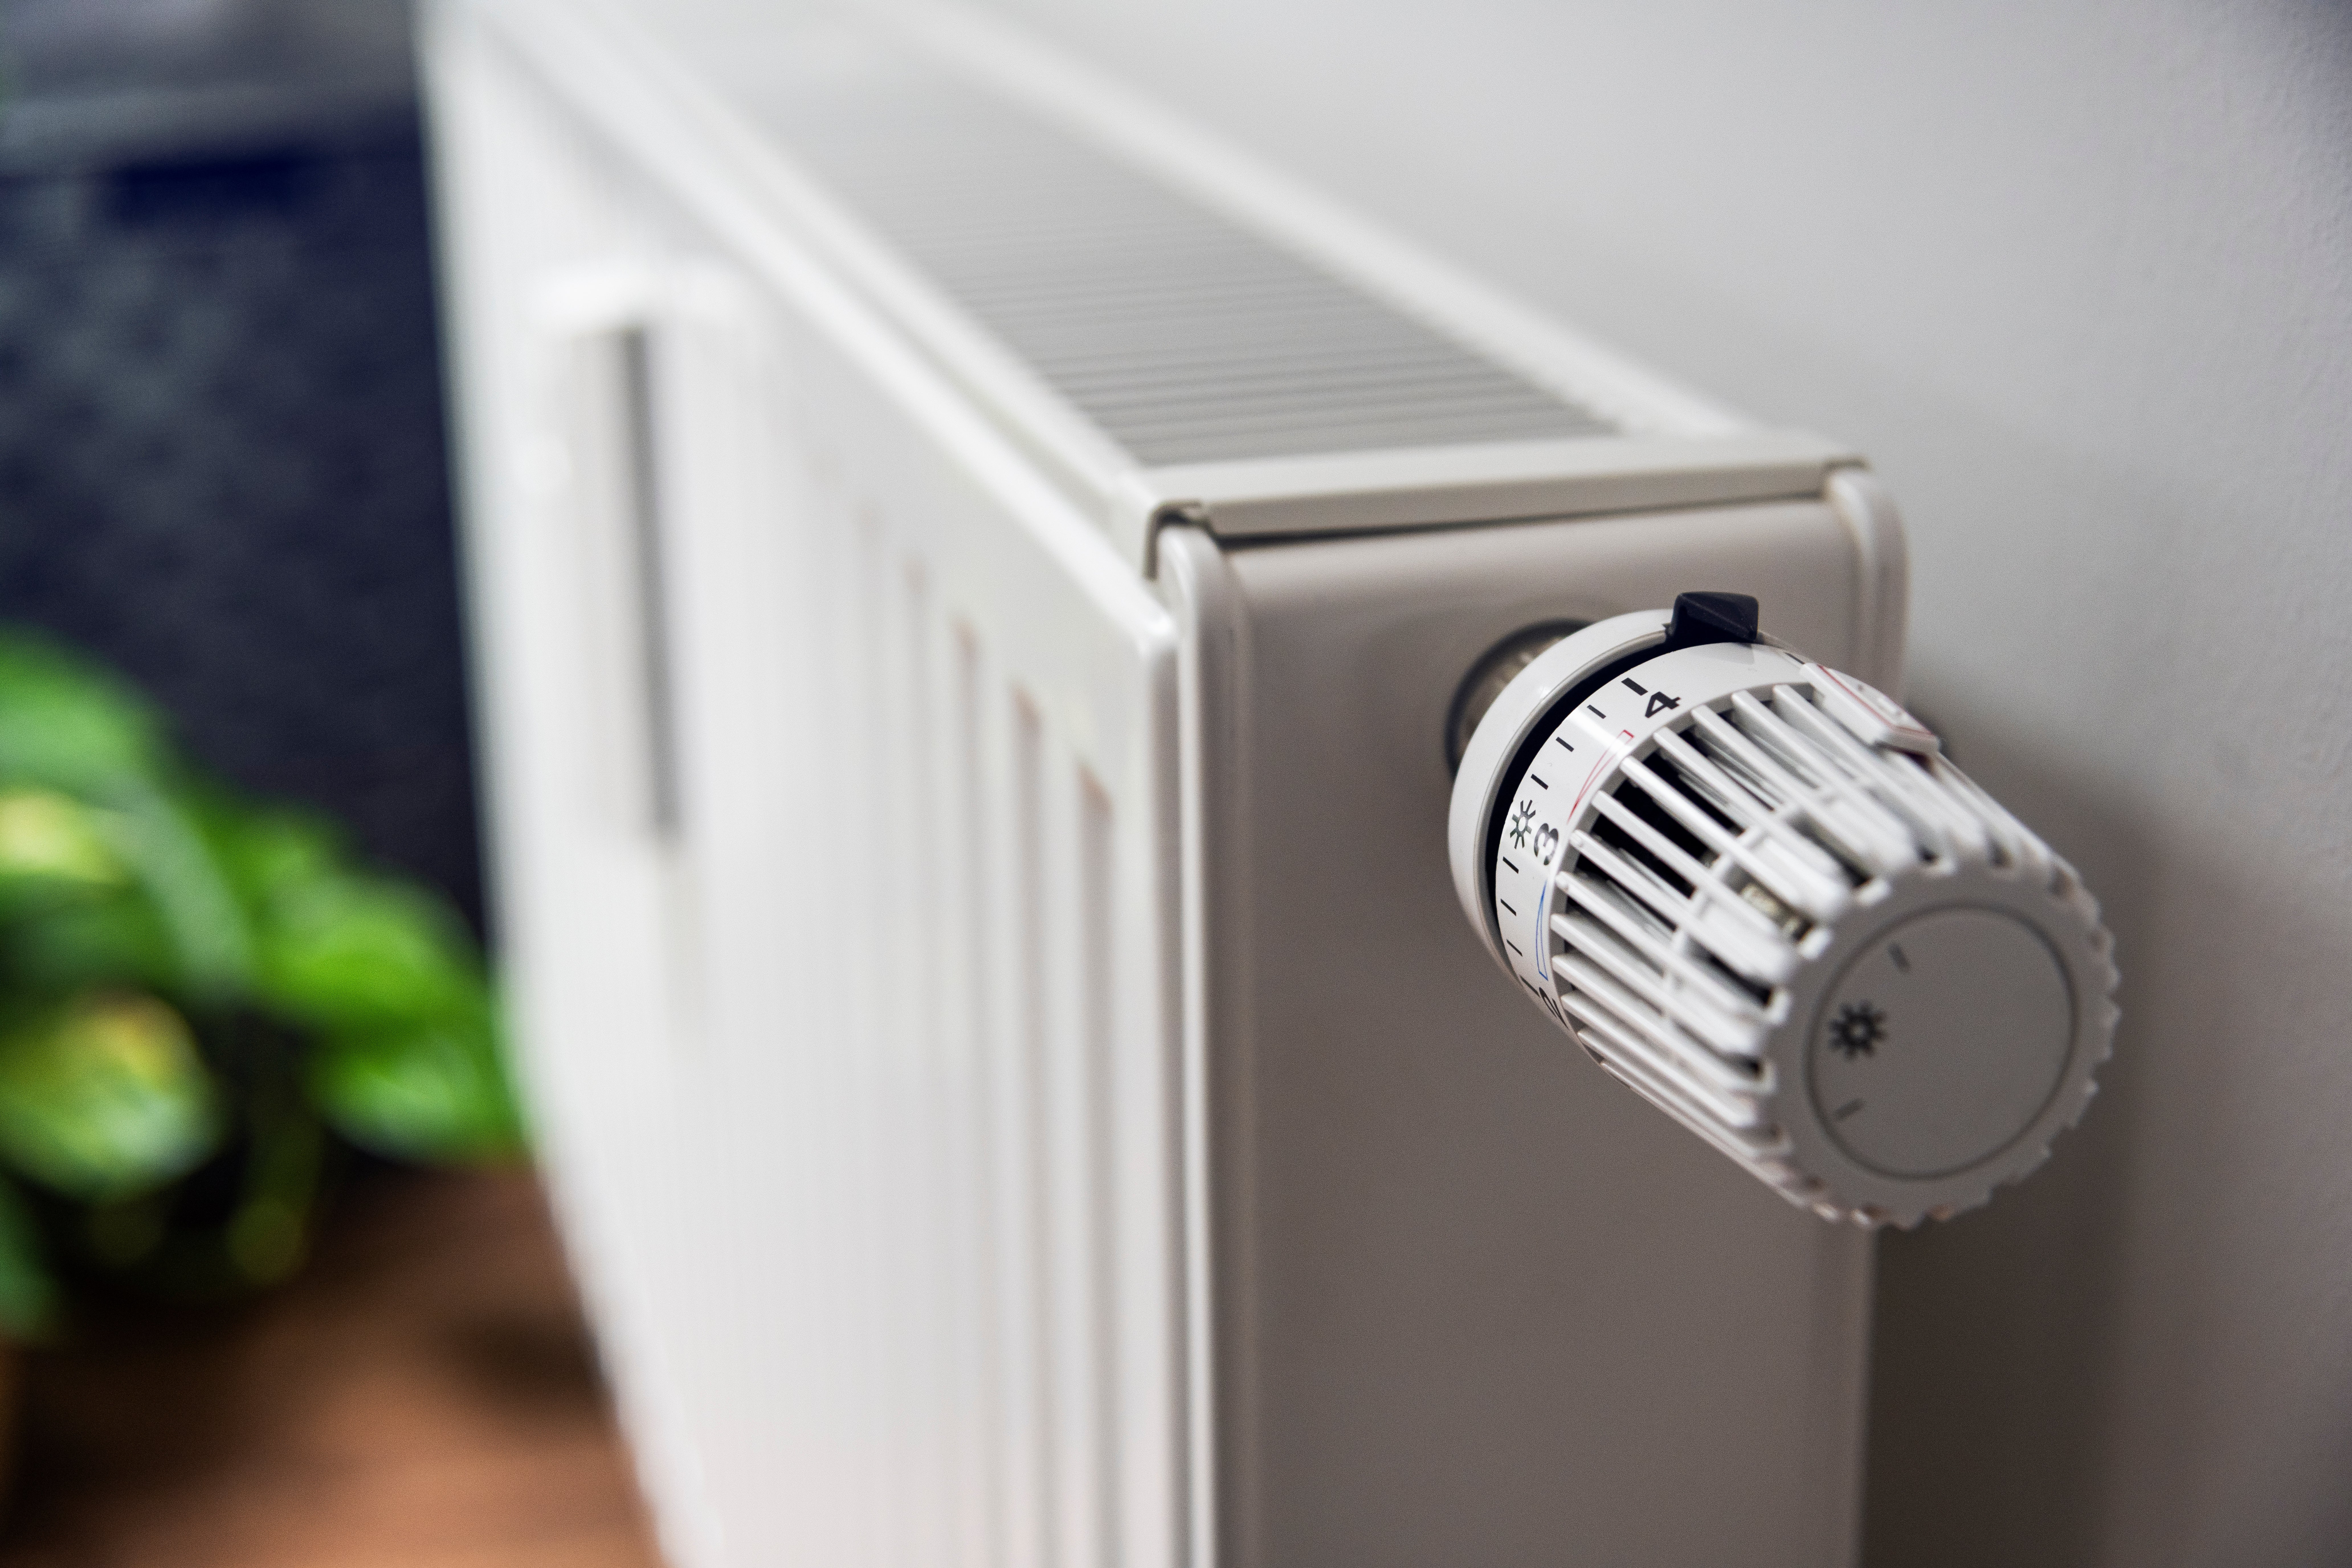 Valvole termostatiche termosifoni: come funzionano